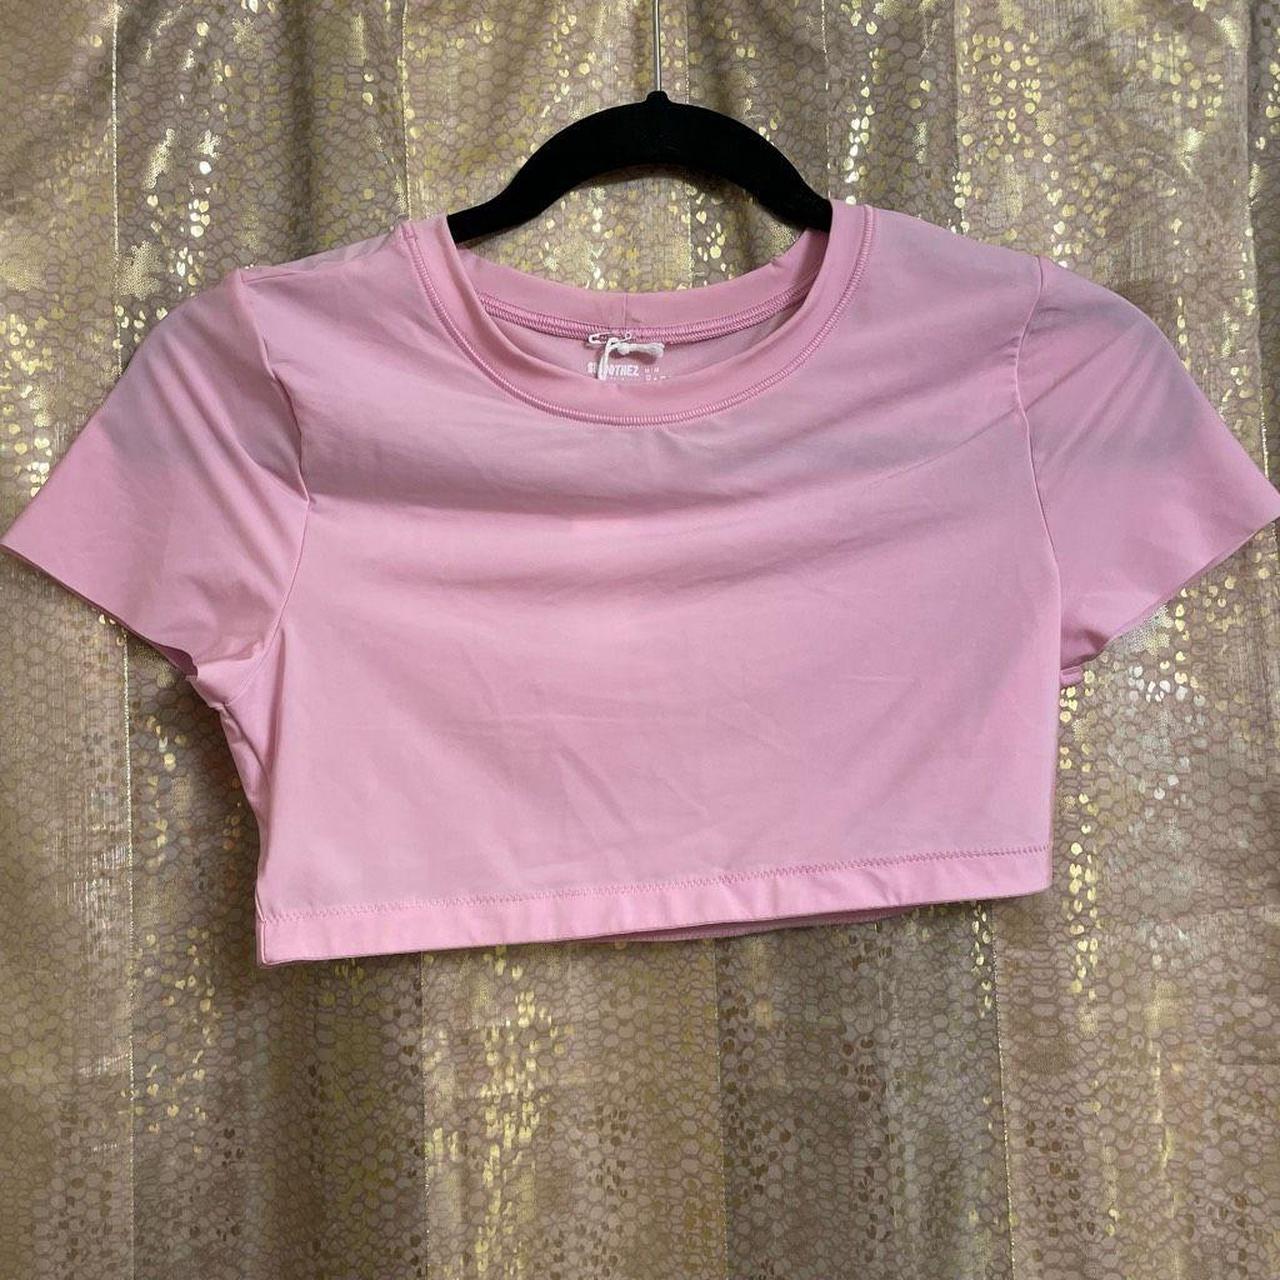 Aerie SMOOTHEZ Light Pink Cropped Bralette T Shirt, - Depop